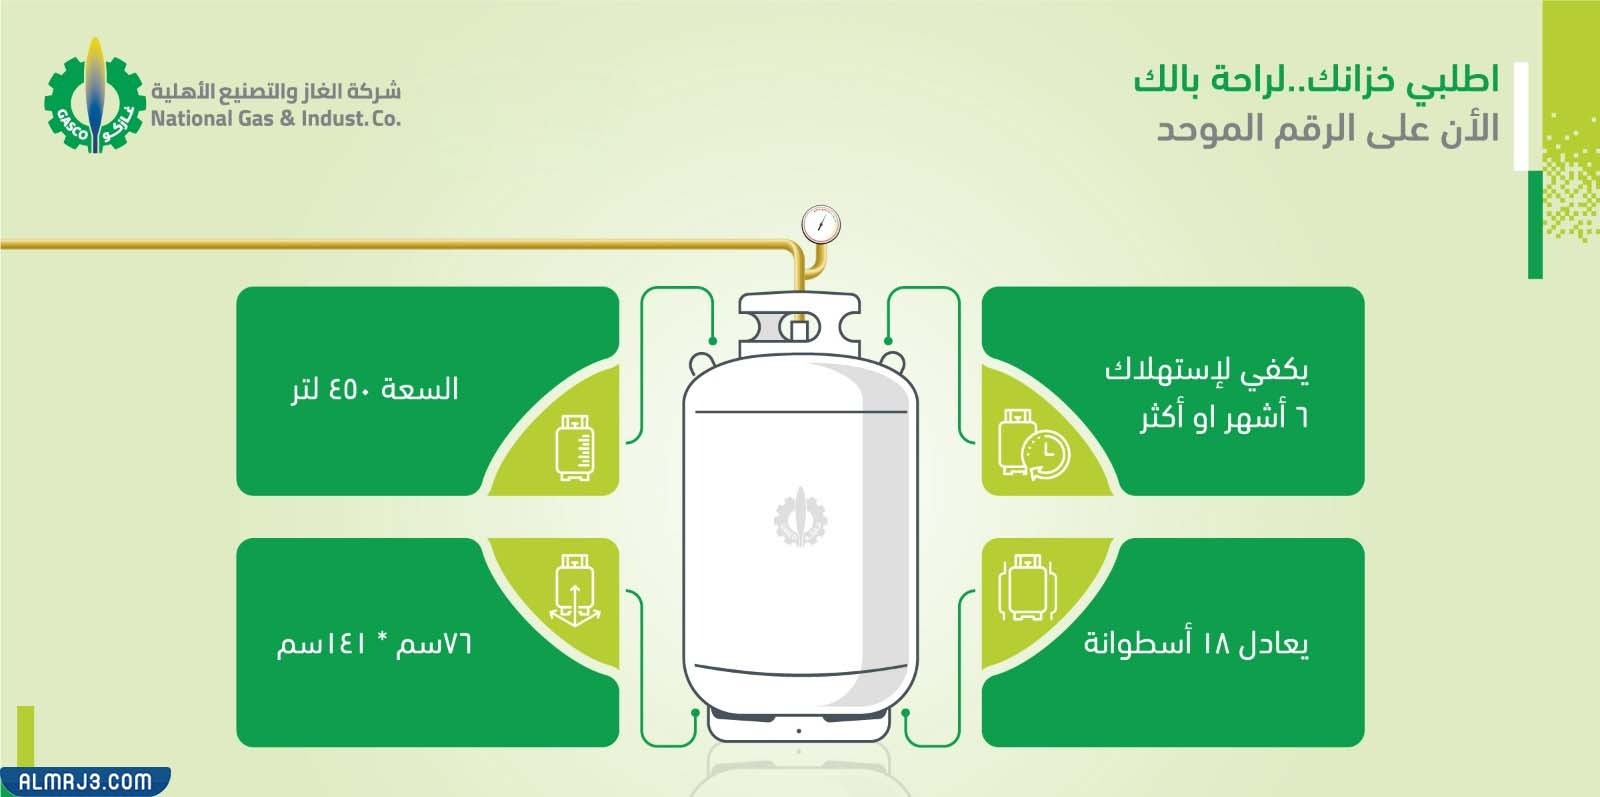 كم تبلغ سعة اسطوانة الغاز في السعودية